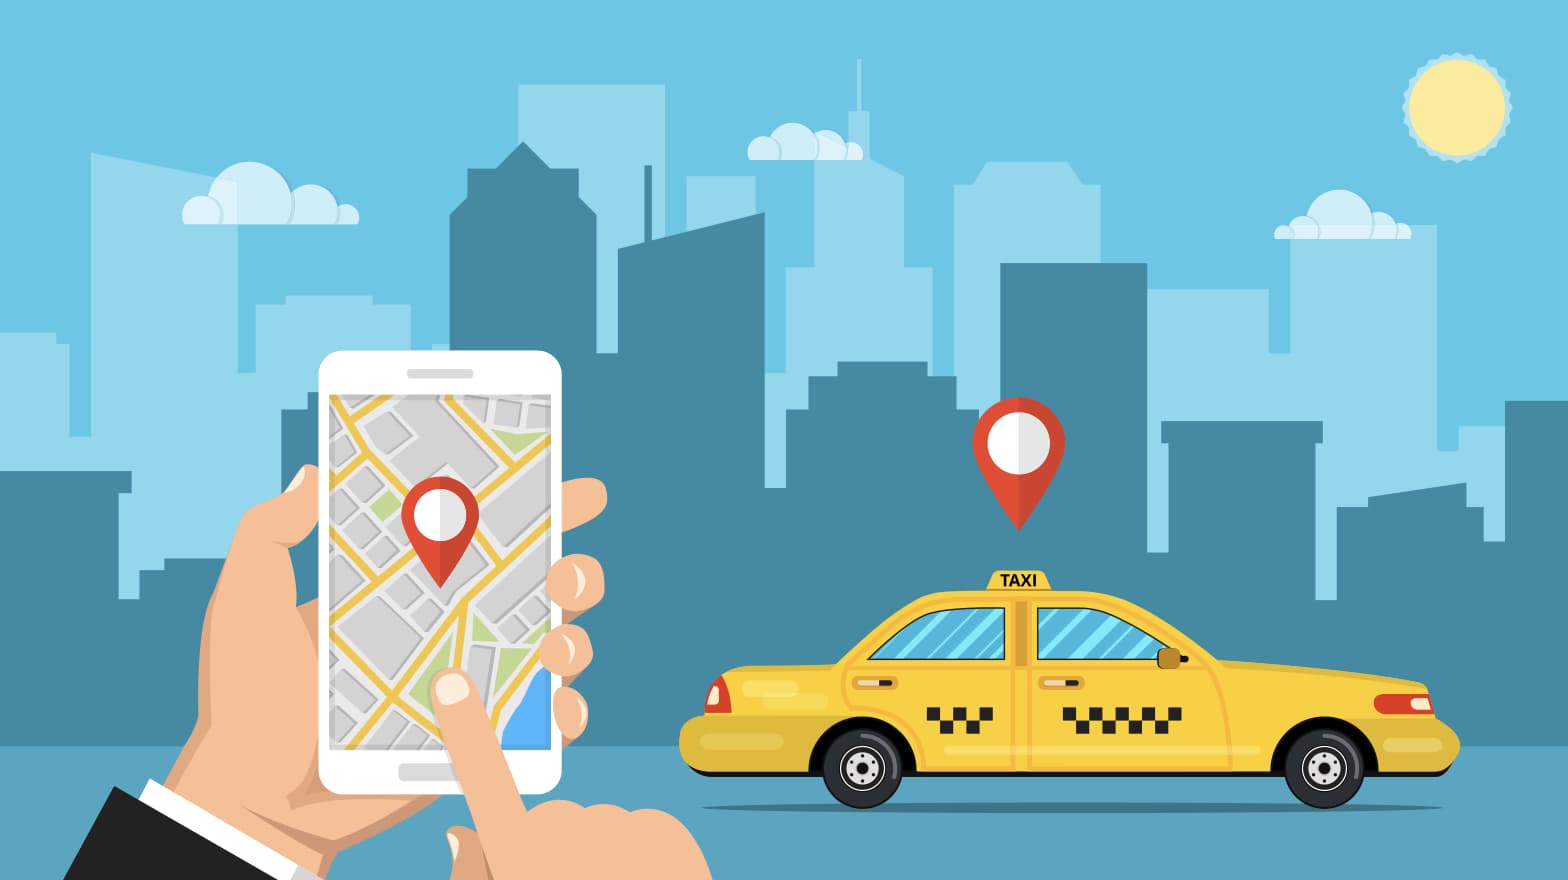 八戸で使えるタクシーアプリとクーポン情報